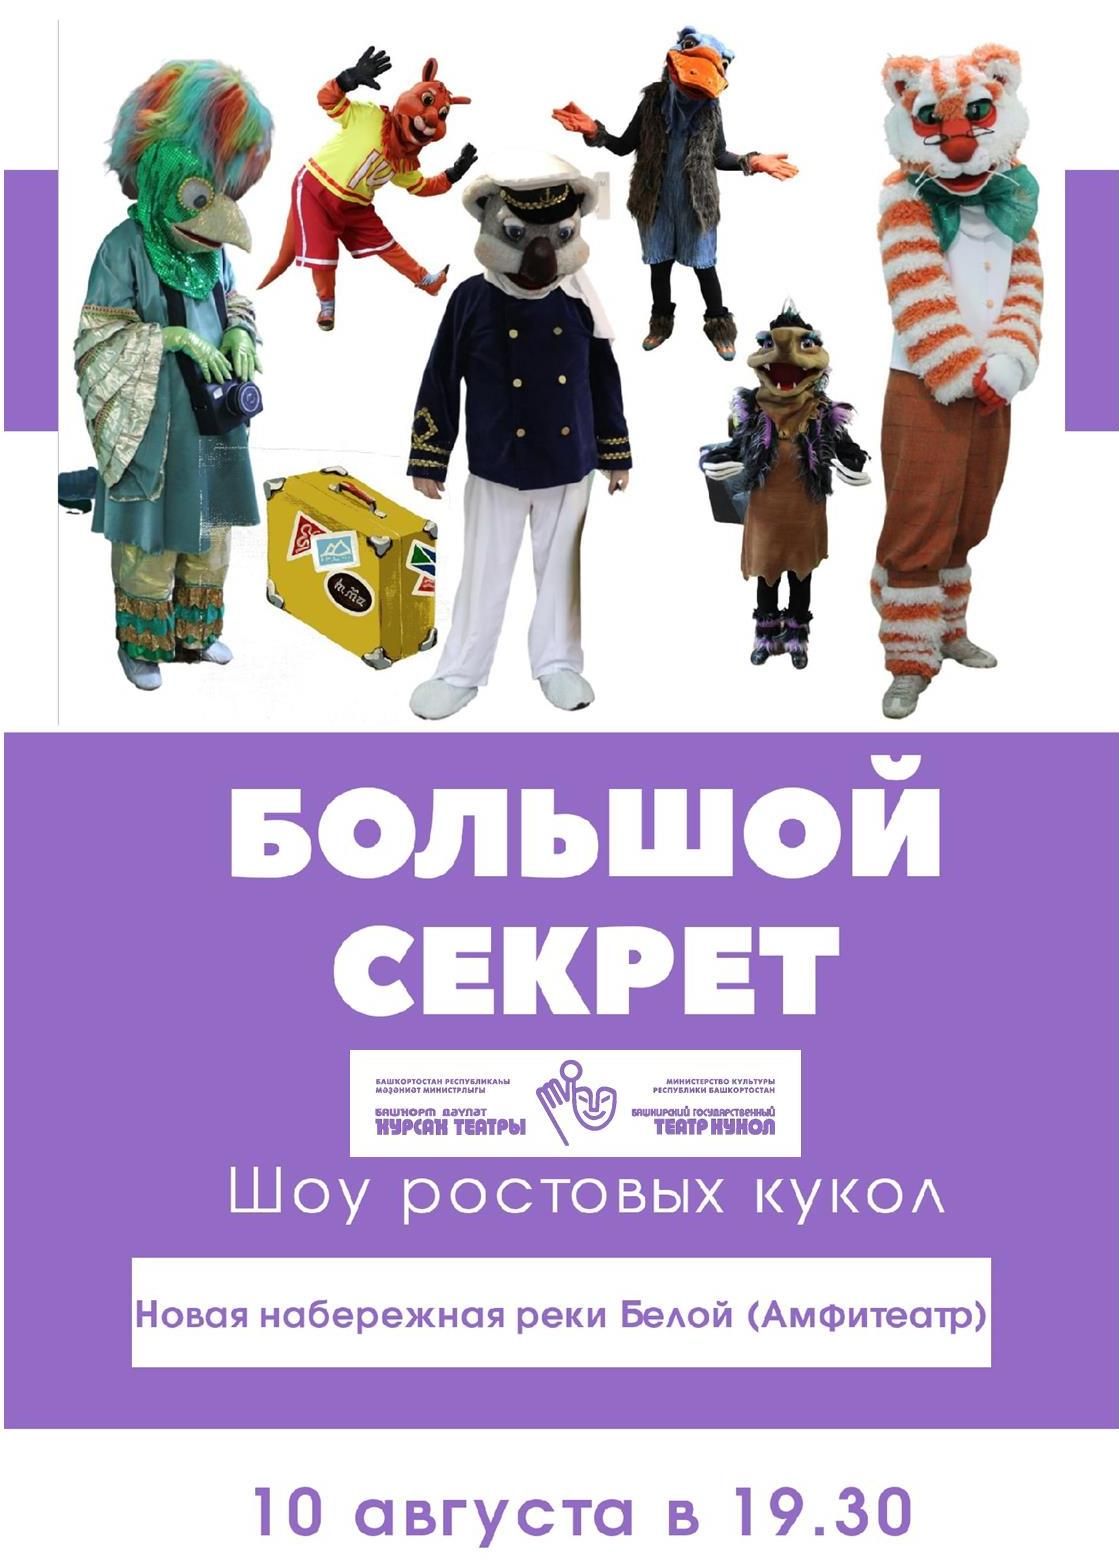 Актеры Башкирского государственного театра кукол представят 10 августа шоу ростовых кукол «Большой секрет»